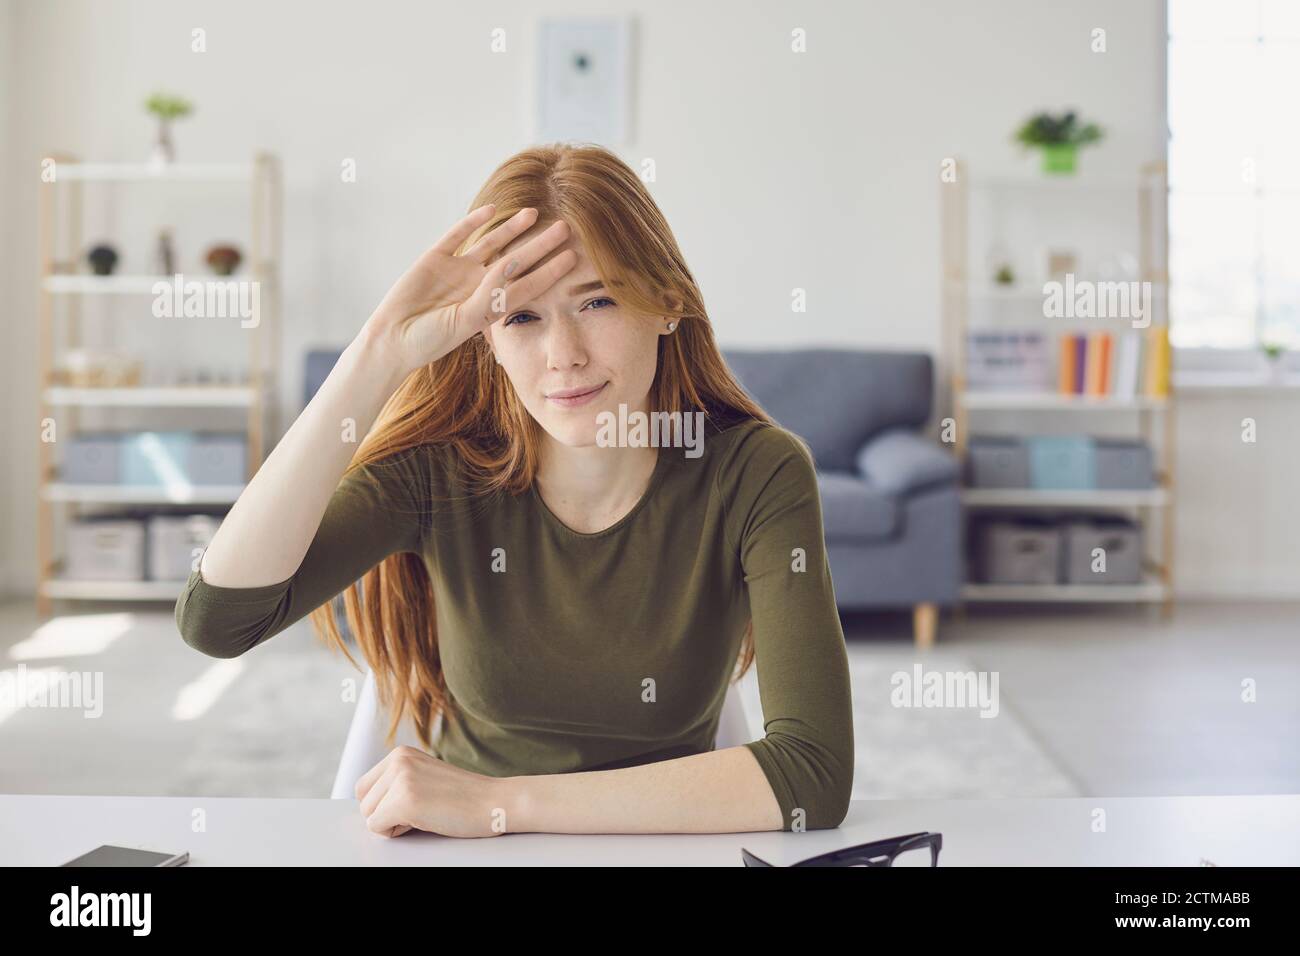 Femme fatiguée stressée regardant la caméra pendant la leçon en ligne ou rencontre et expression de maux de tête Banque D'Images